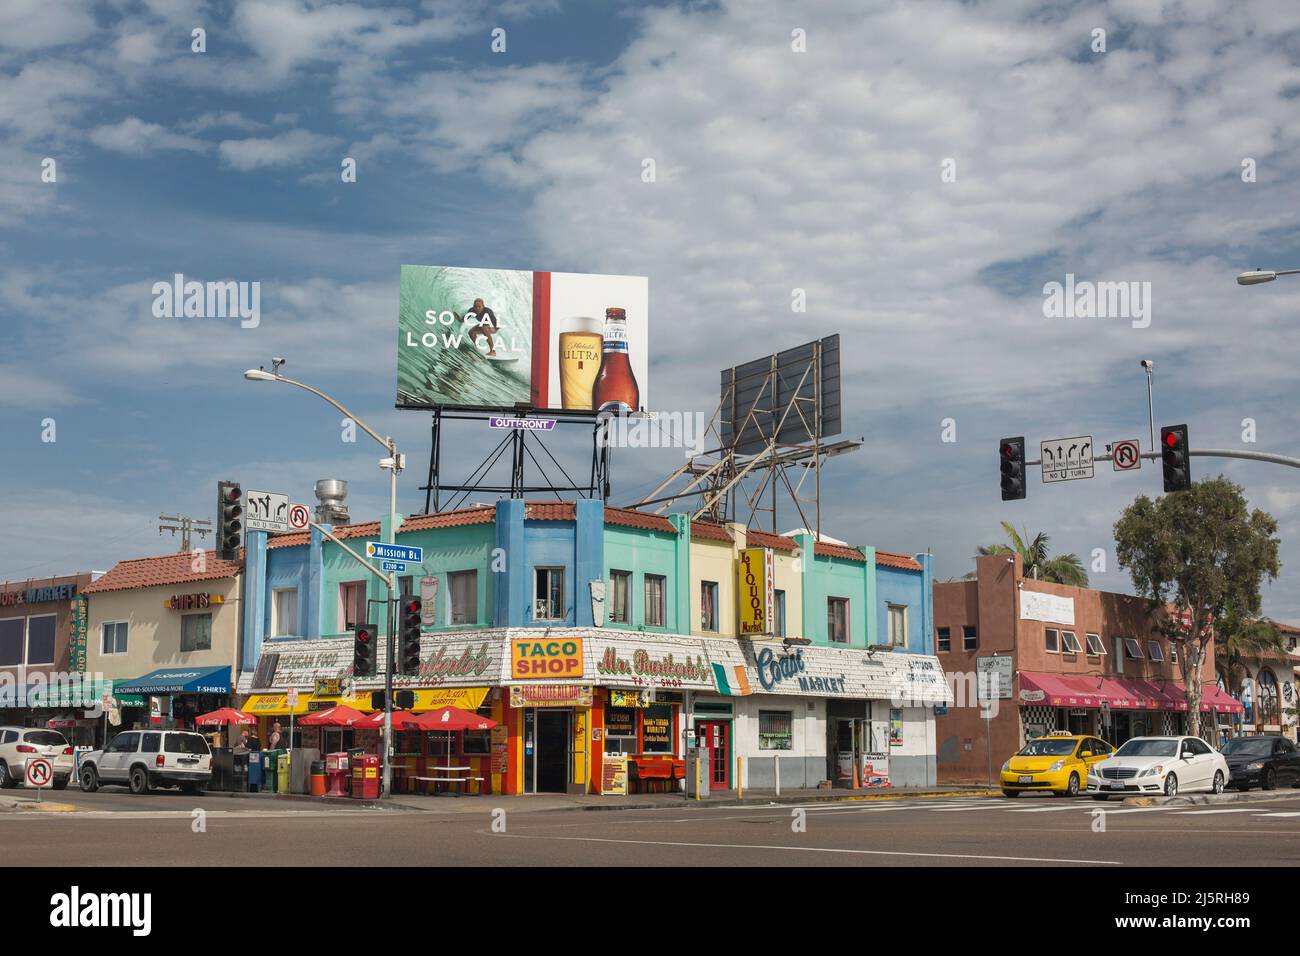 Pastellfarbene Geschäfte, mexikanische Restaurants und Werbetafeln in Mission Bay, San Diego Stockfoto